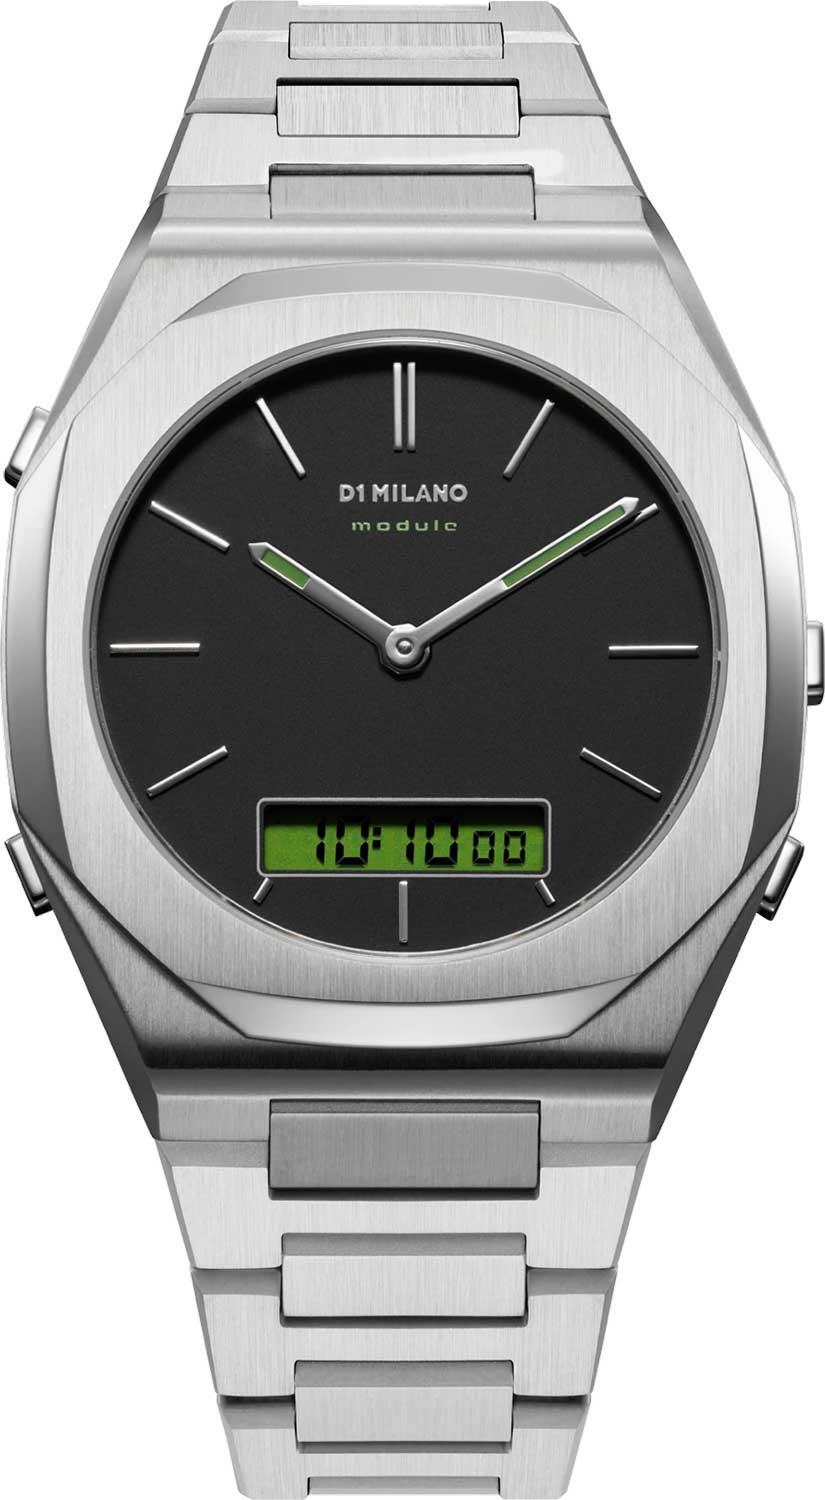 фото Наручные часы мужские d1 milano dgbj01 серебристые